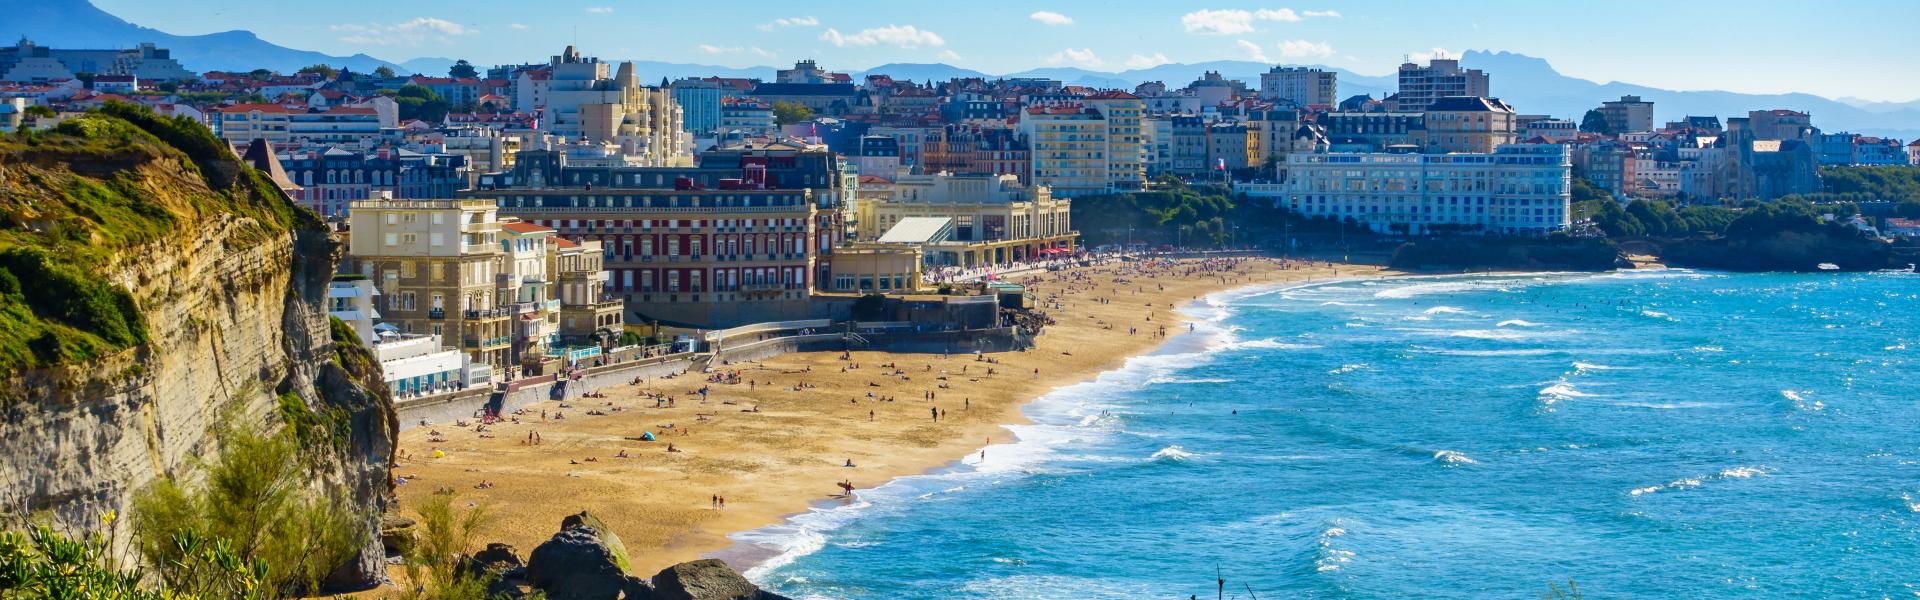 Ferienwohnungen & Ferienhäuser für Urlaub in Biarritz - Casamundo